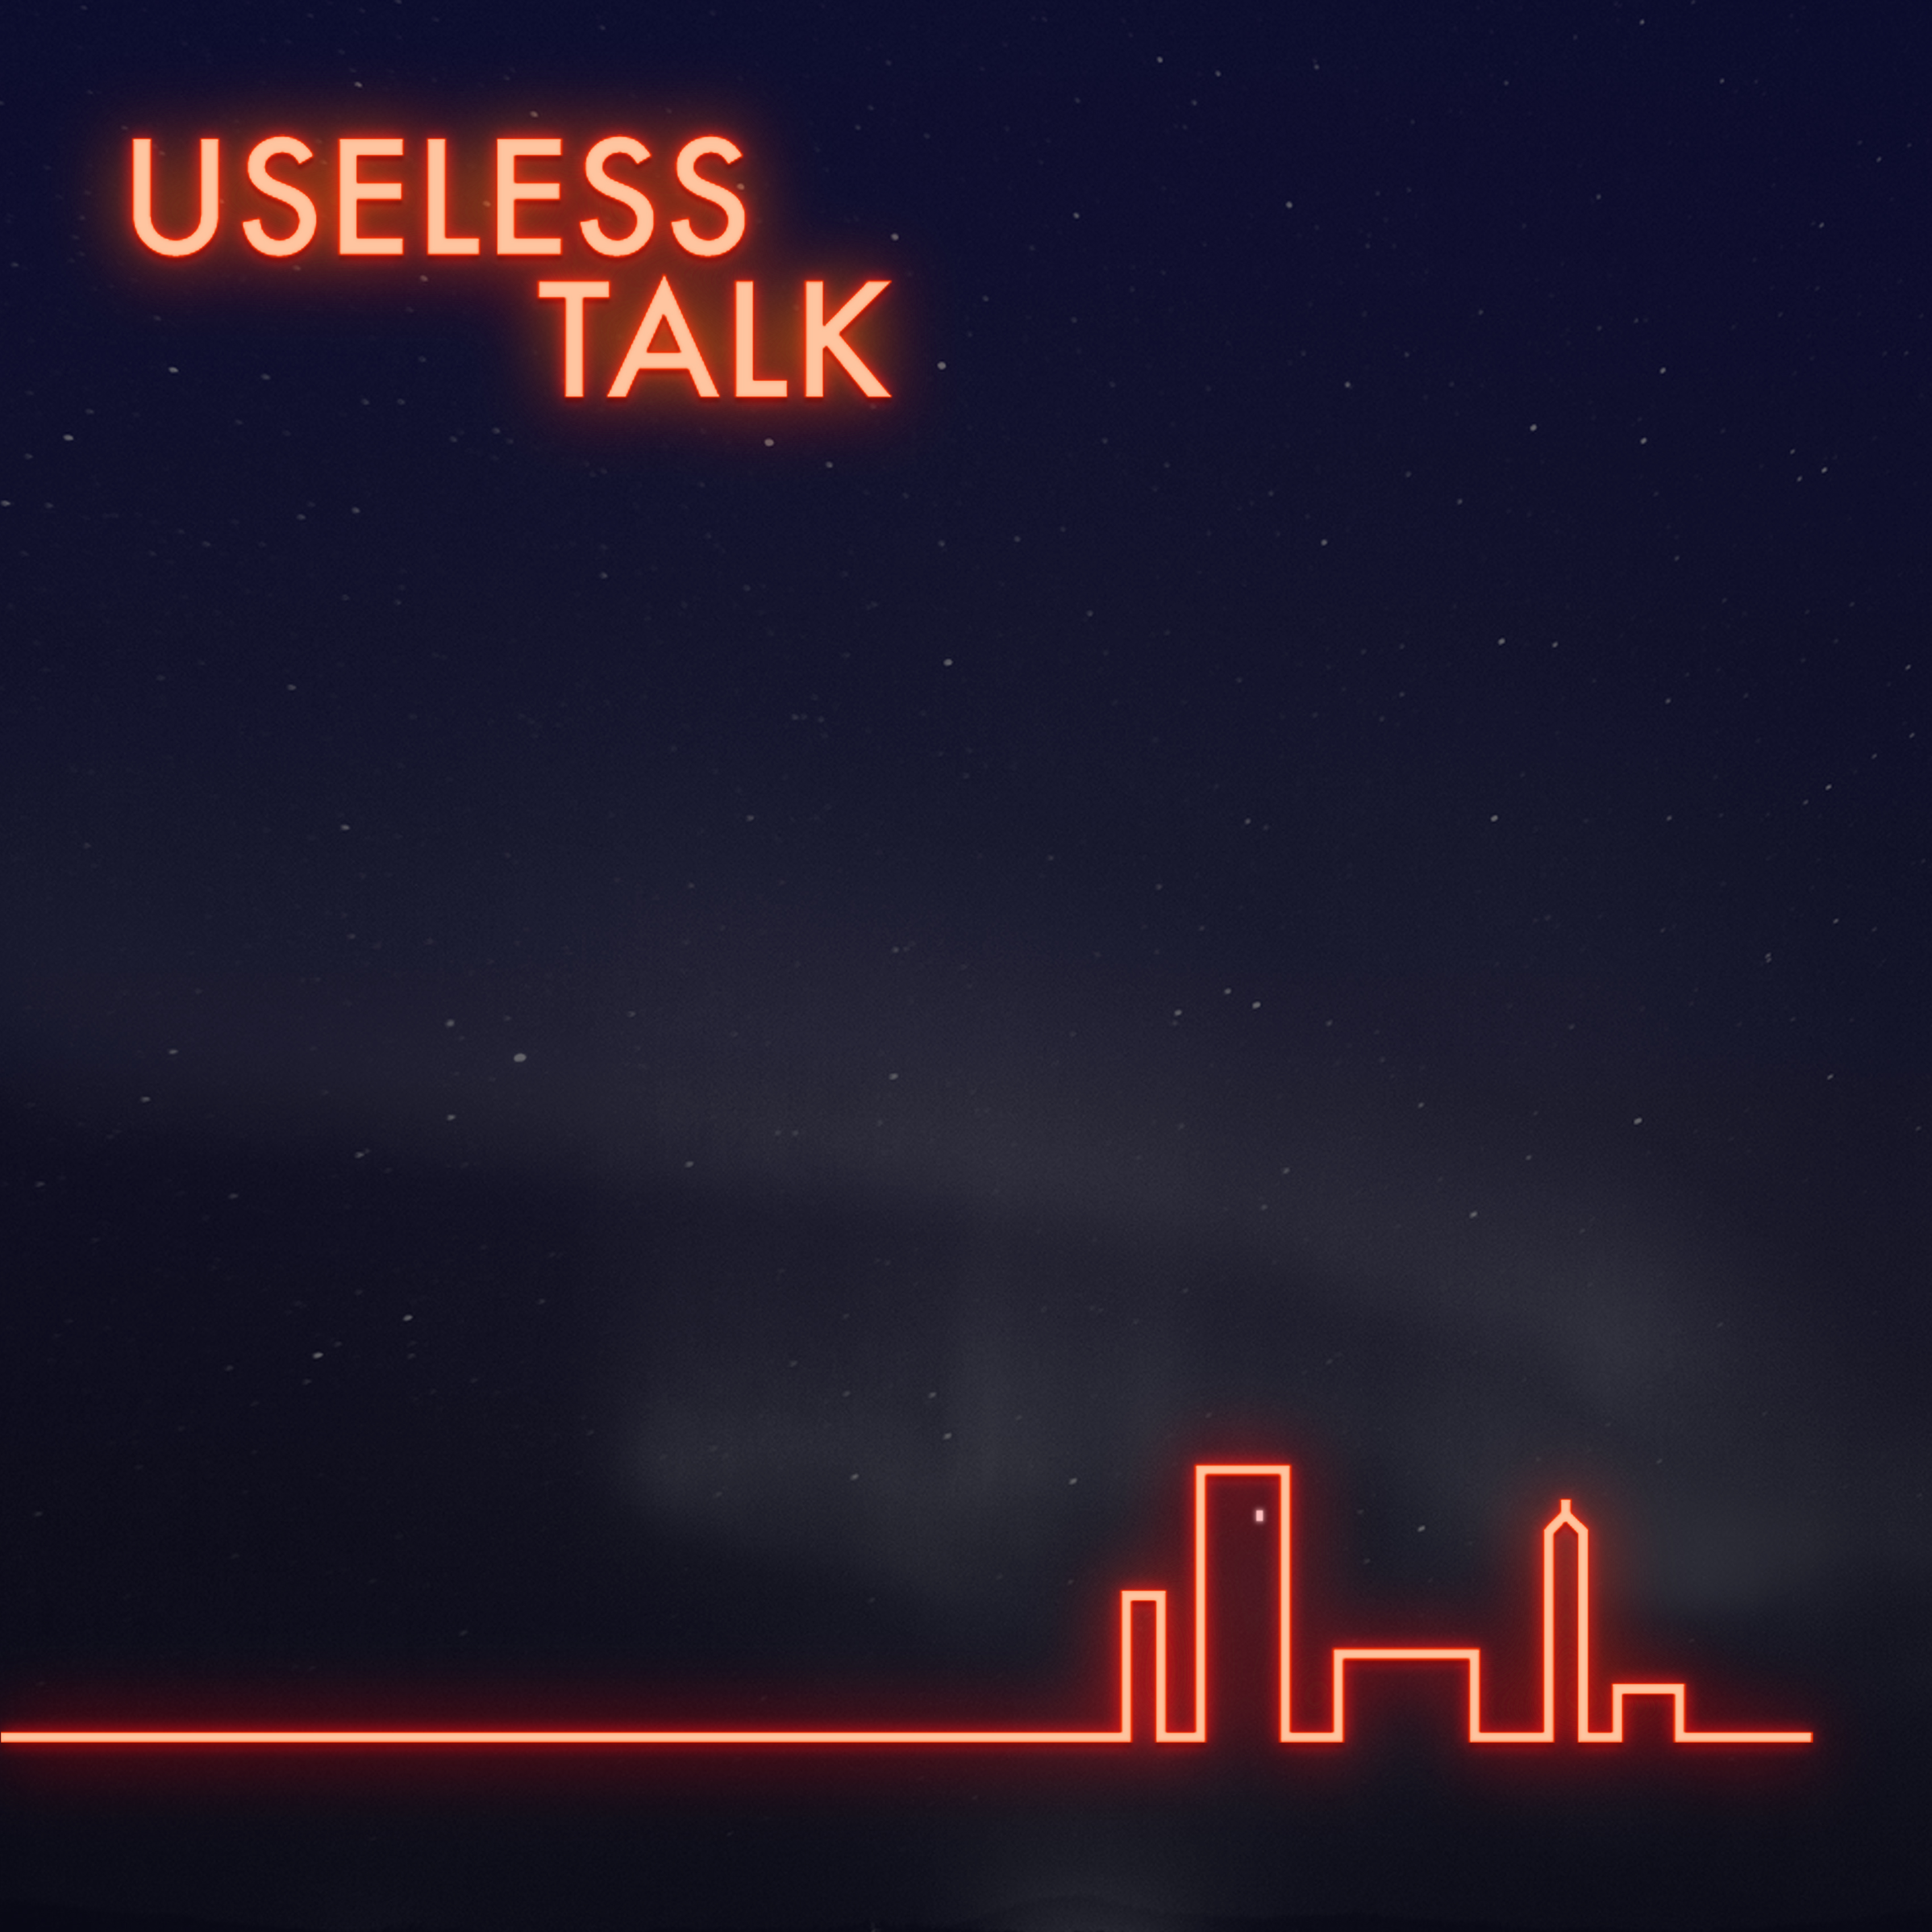 Useless talk